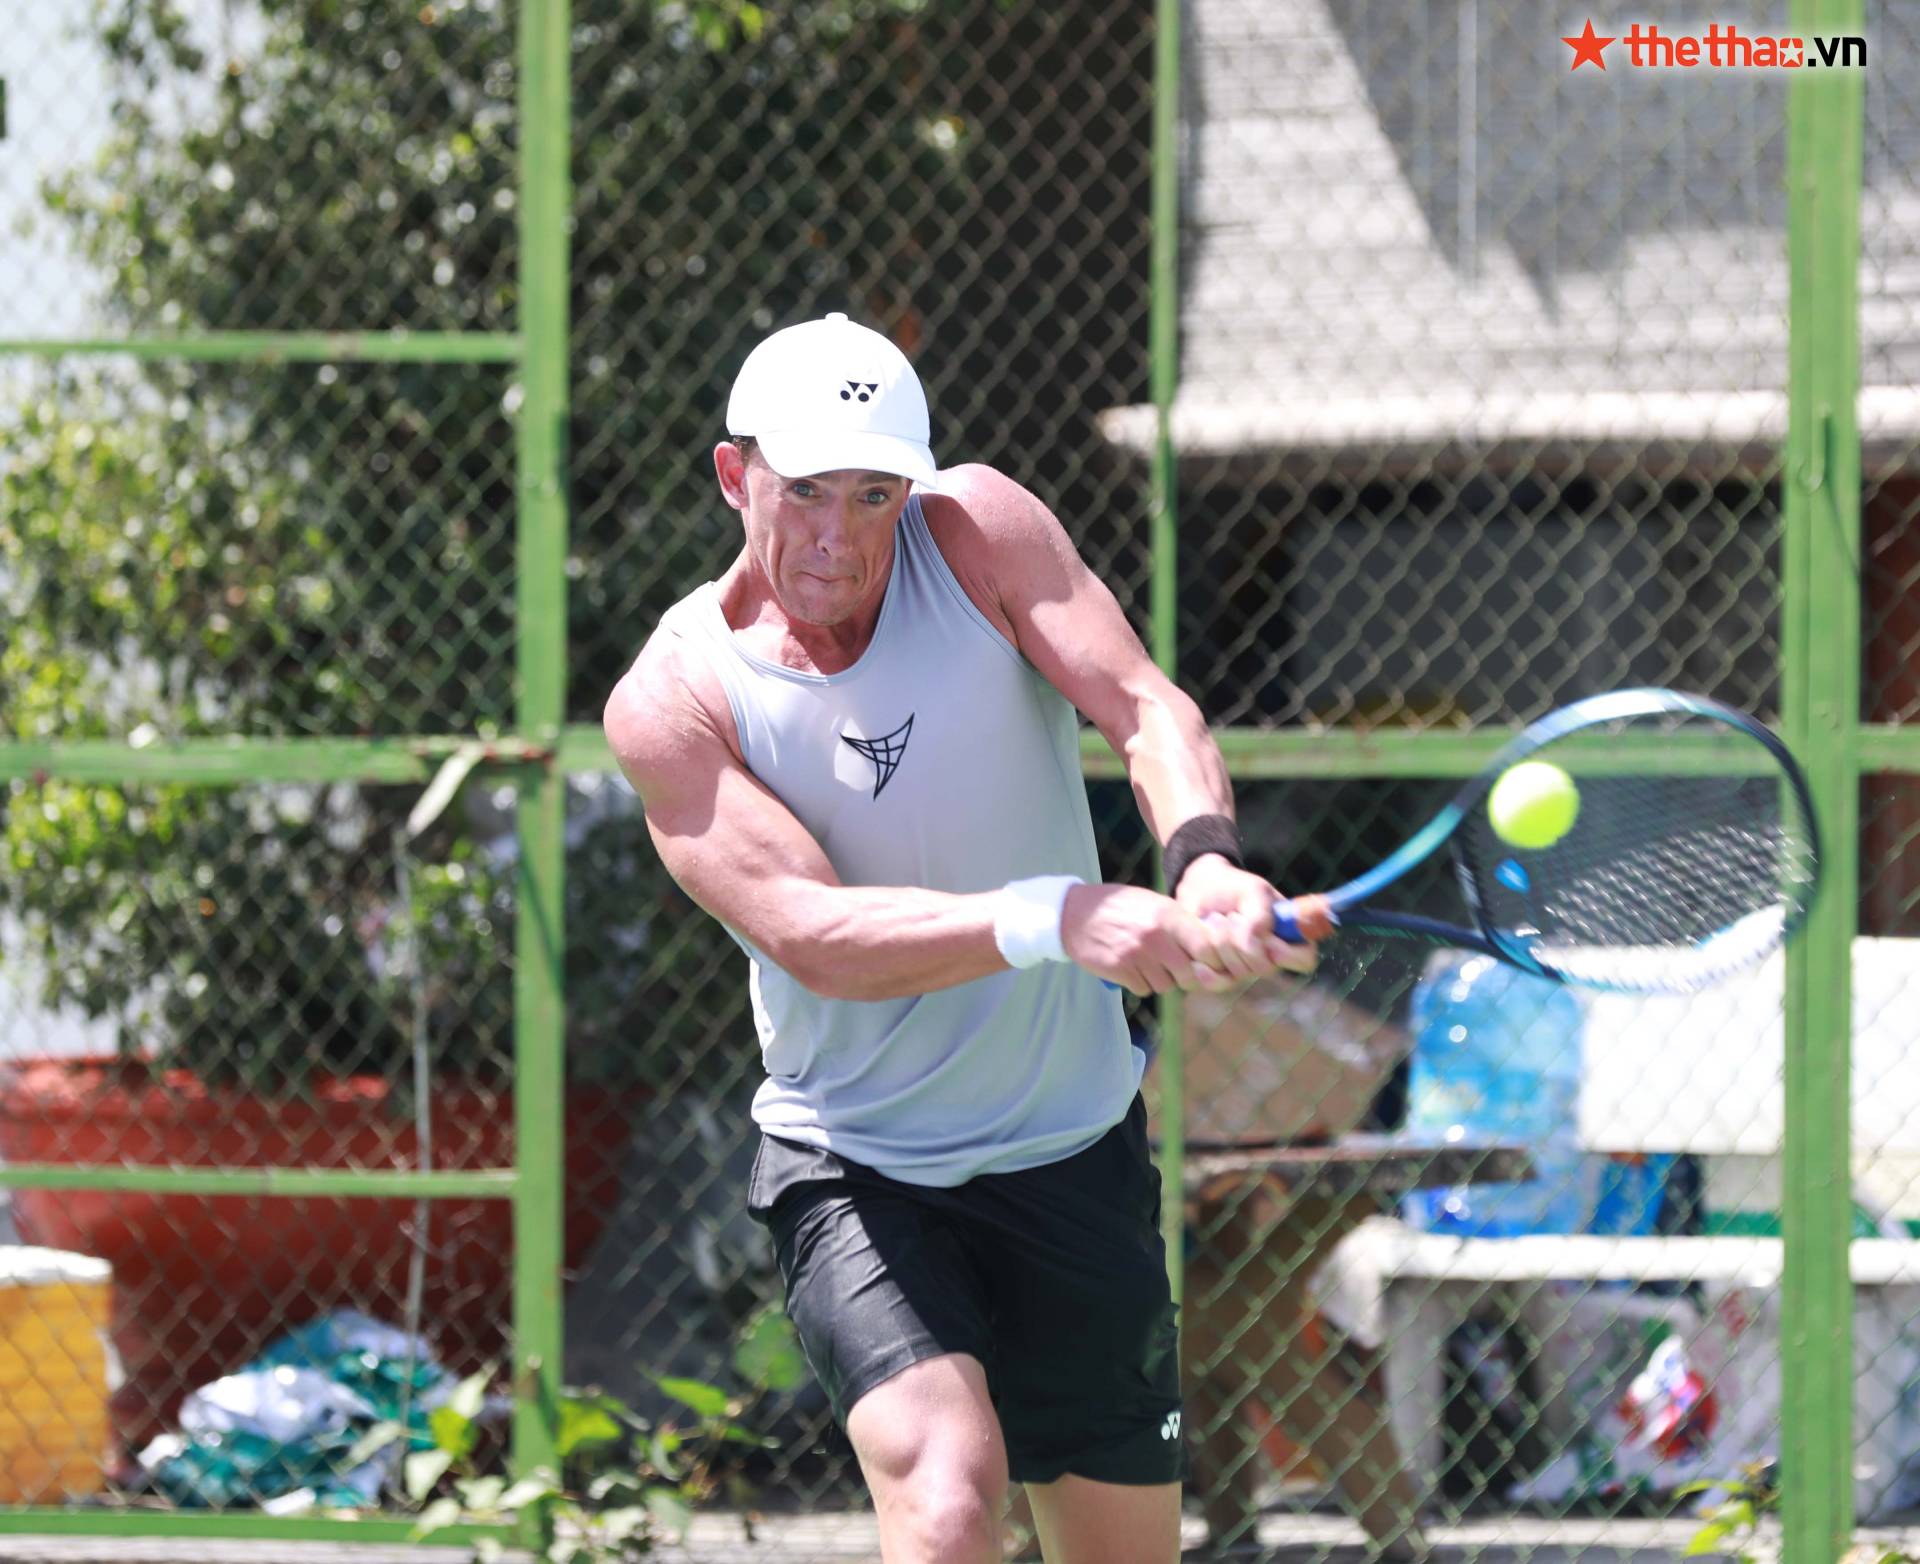 M25 Tây Ninh: Tay vợt New Zealand tập giữa trưa nắng, khoe cơ bắp cuồn cuộn ở tuổi 35 - Ảnh 8